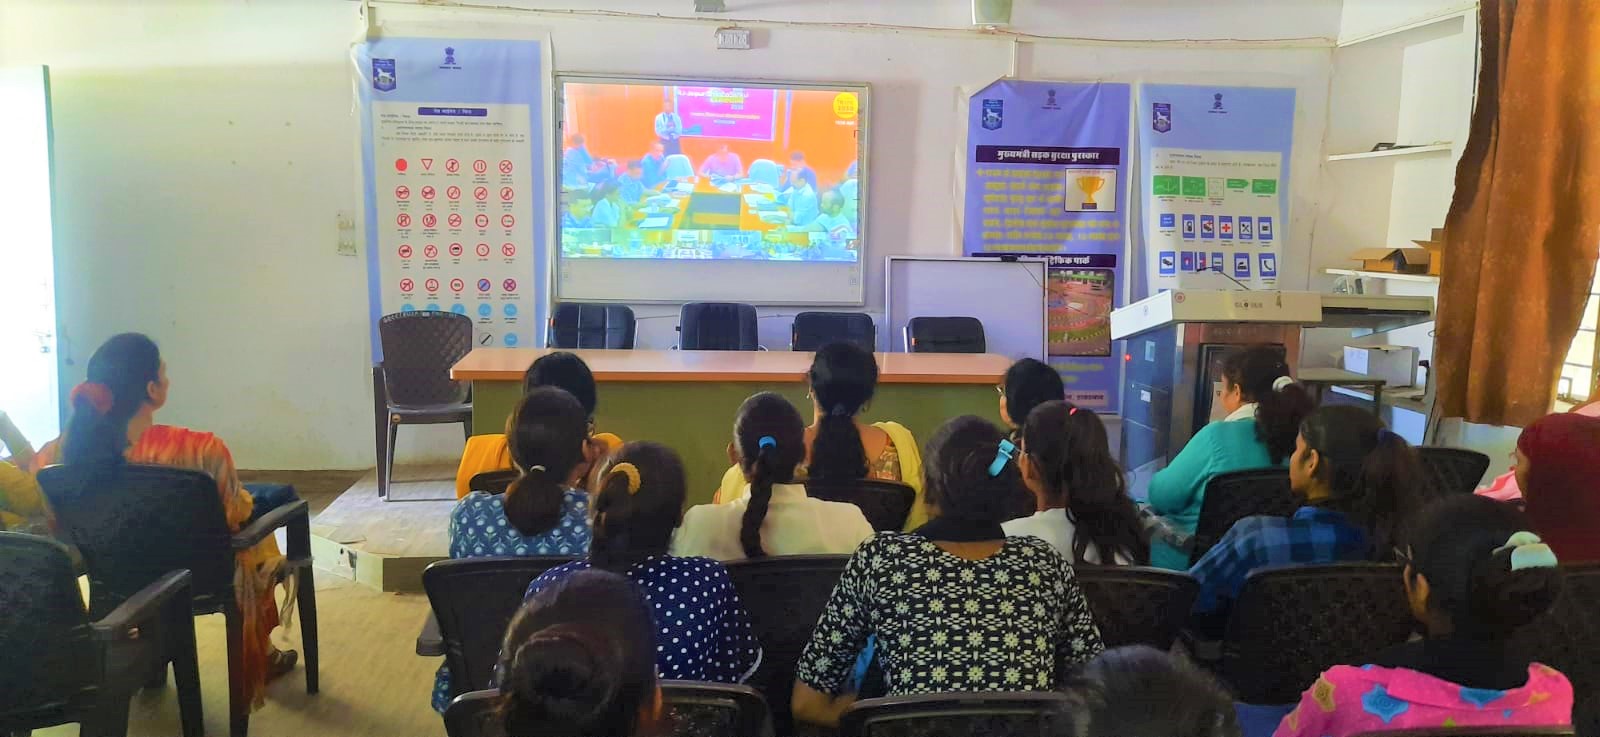 महाविद्यालय की छात्राओं ने लिया राजस्थान मिशन 2030 लाइव प्रसारण में भाग